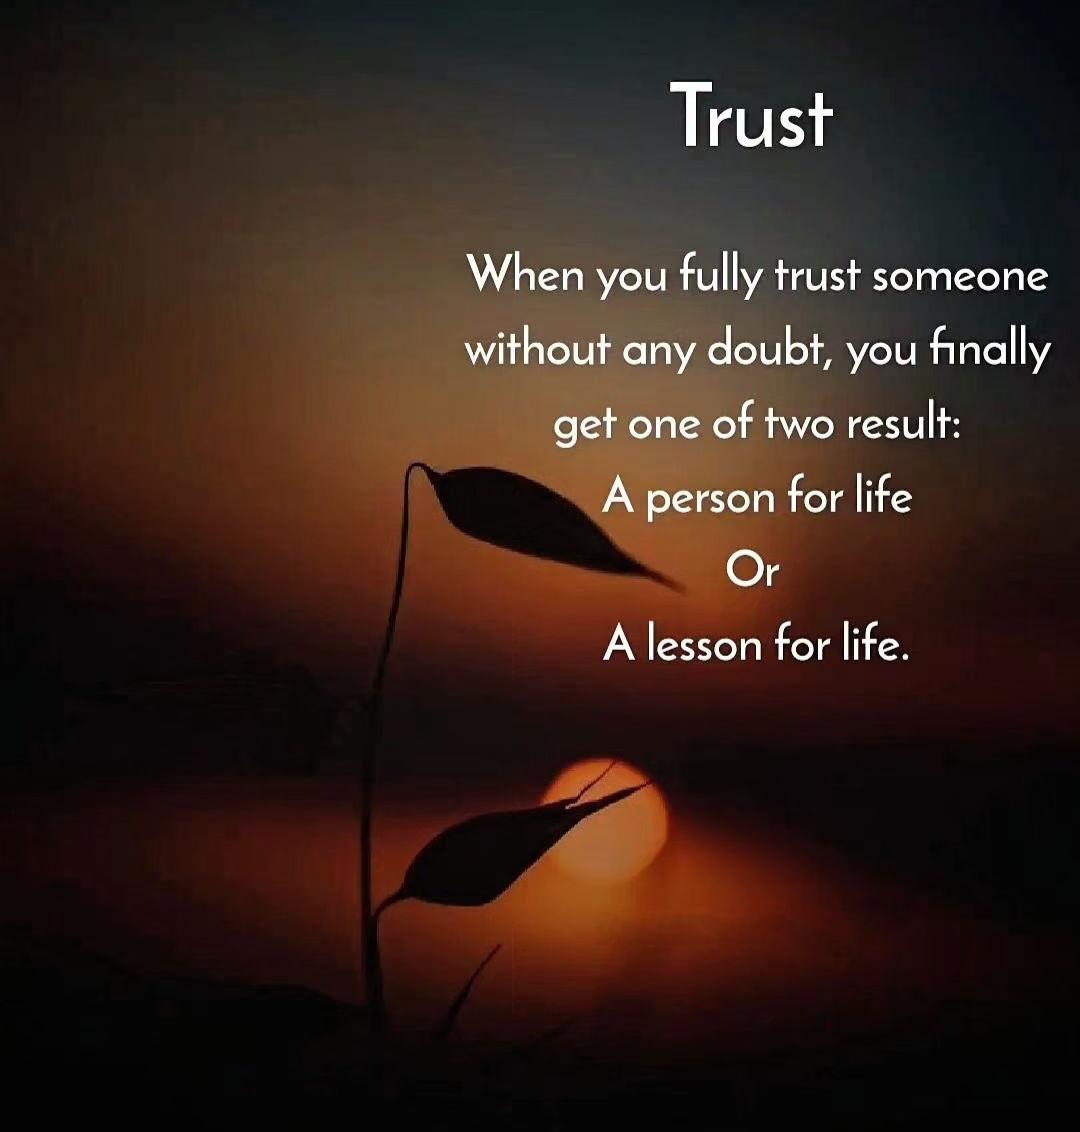 جب آپ بغیر کسی شک کے کسی پر مکمل اعتماد کرتے ہیں، تو آپ کو آخر کار دو میں سے ایک نتیجہ ملتا ہے زندگی کے لیے ایک شخص یا زندگی کے لیے ایک سبق۔